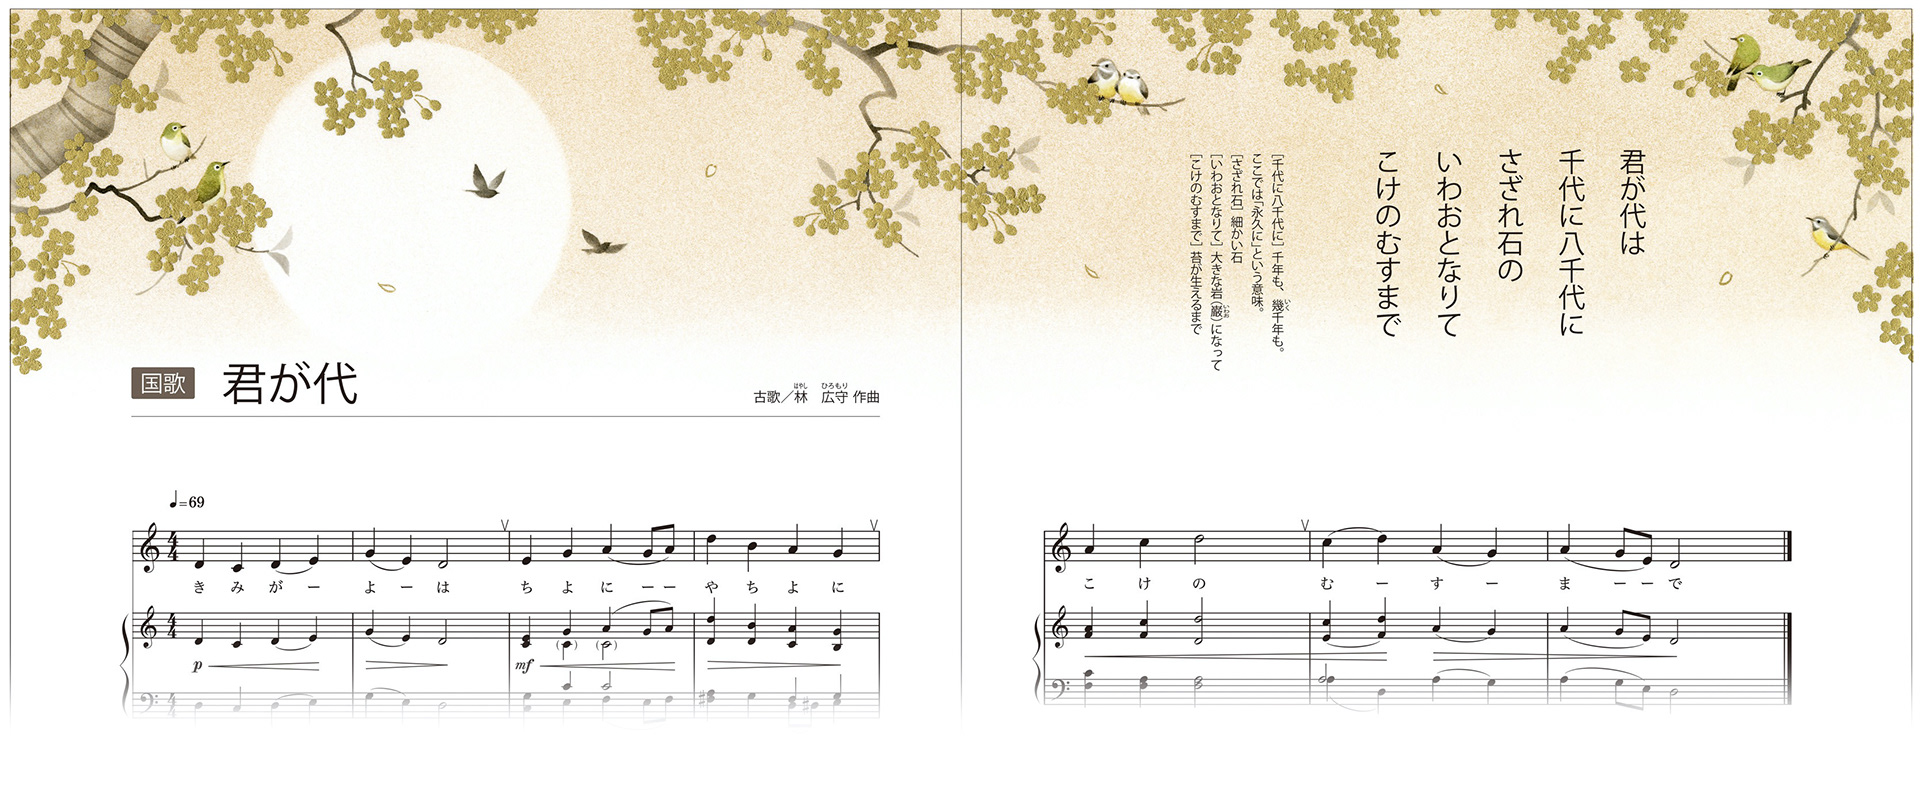 Tadashi Ura Portfolio Site 君が代 中学音楽教科書